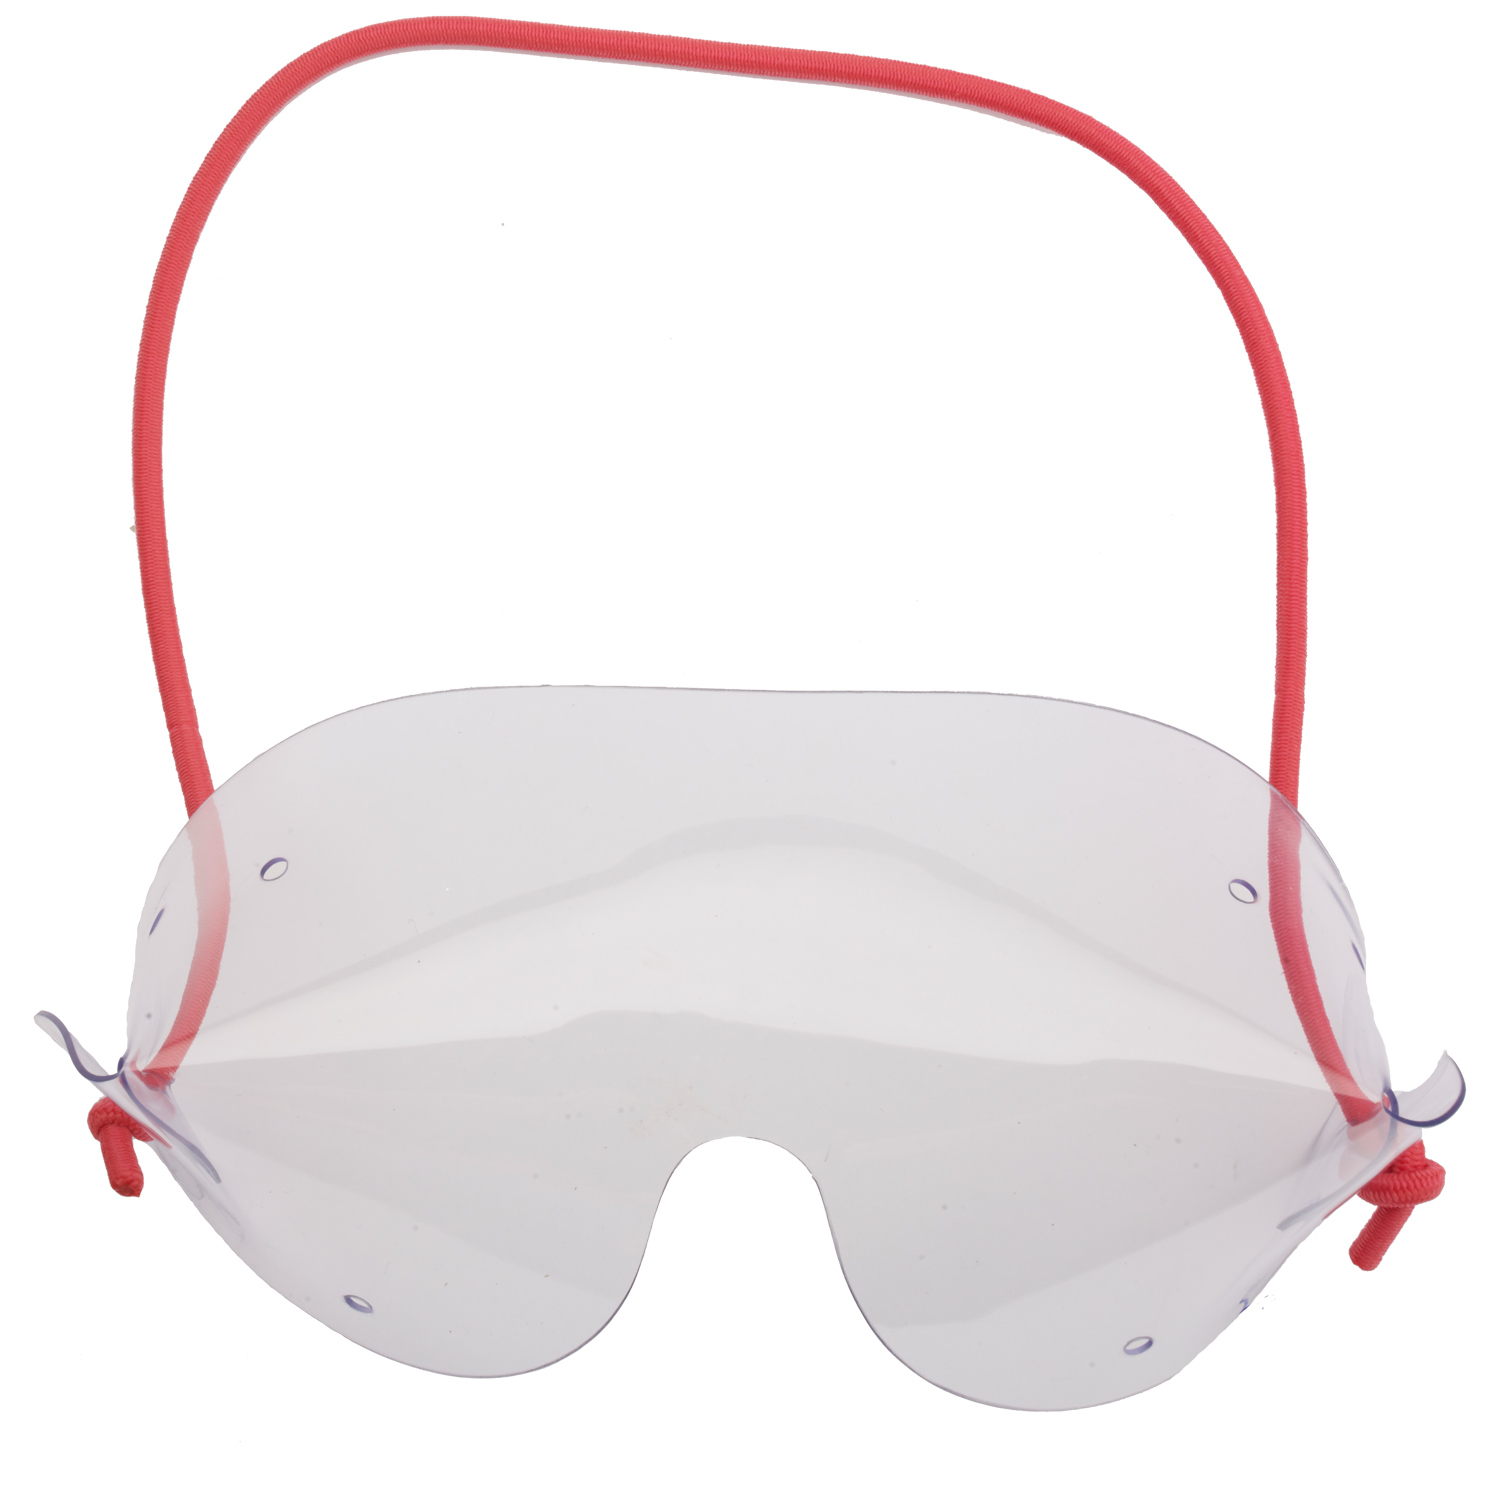 Sprungbrille Flexvision Überbrille